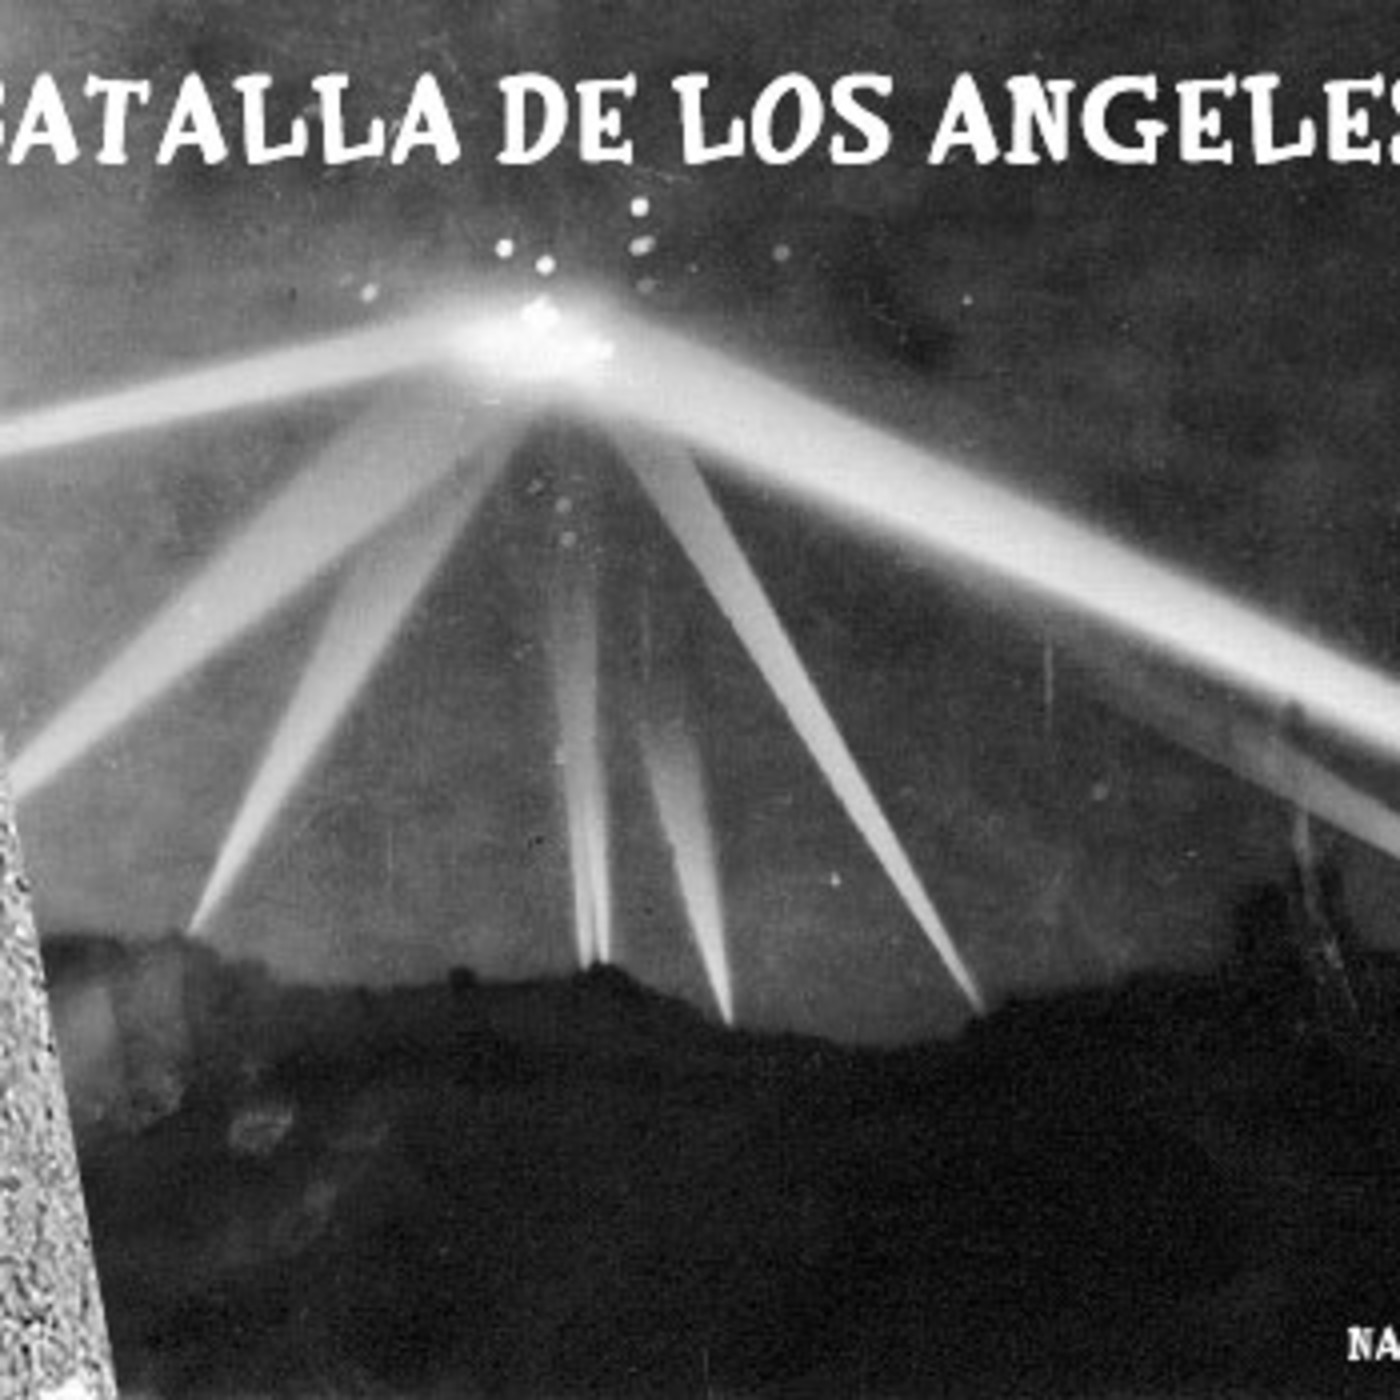 La Puerta Al Misterio- La Batalla de los Angeles